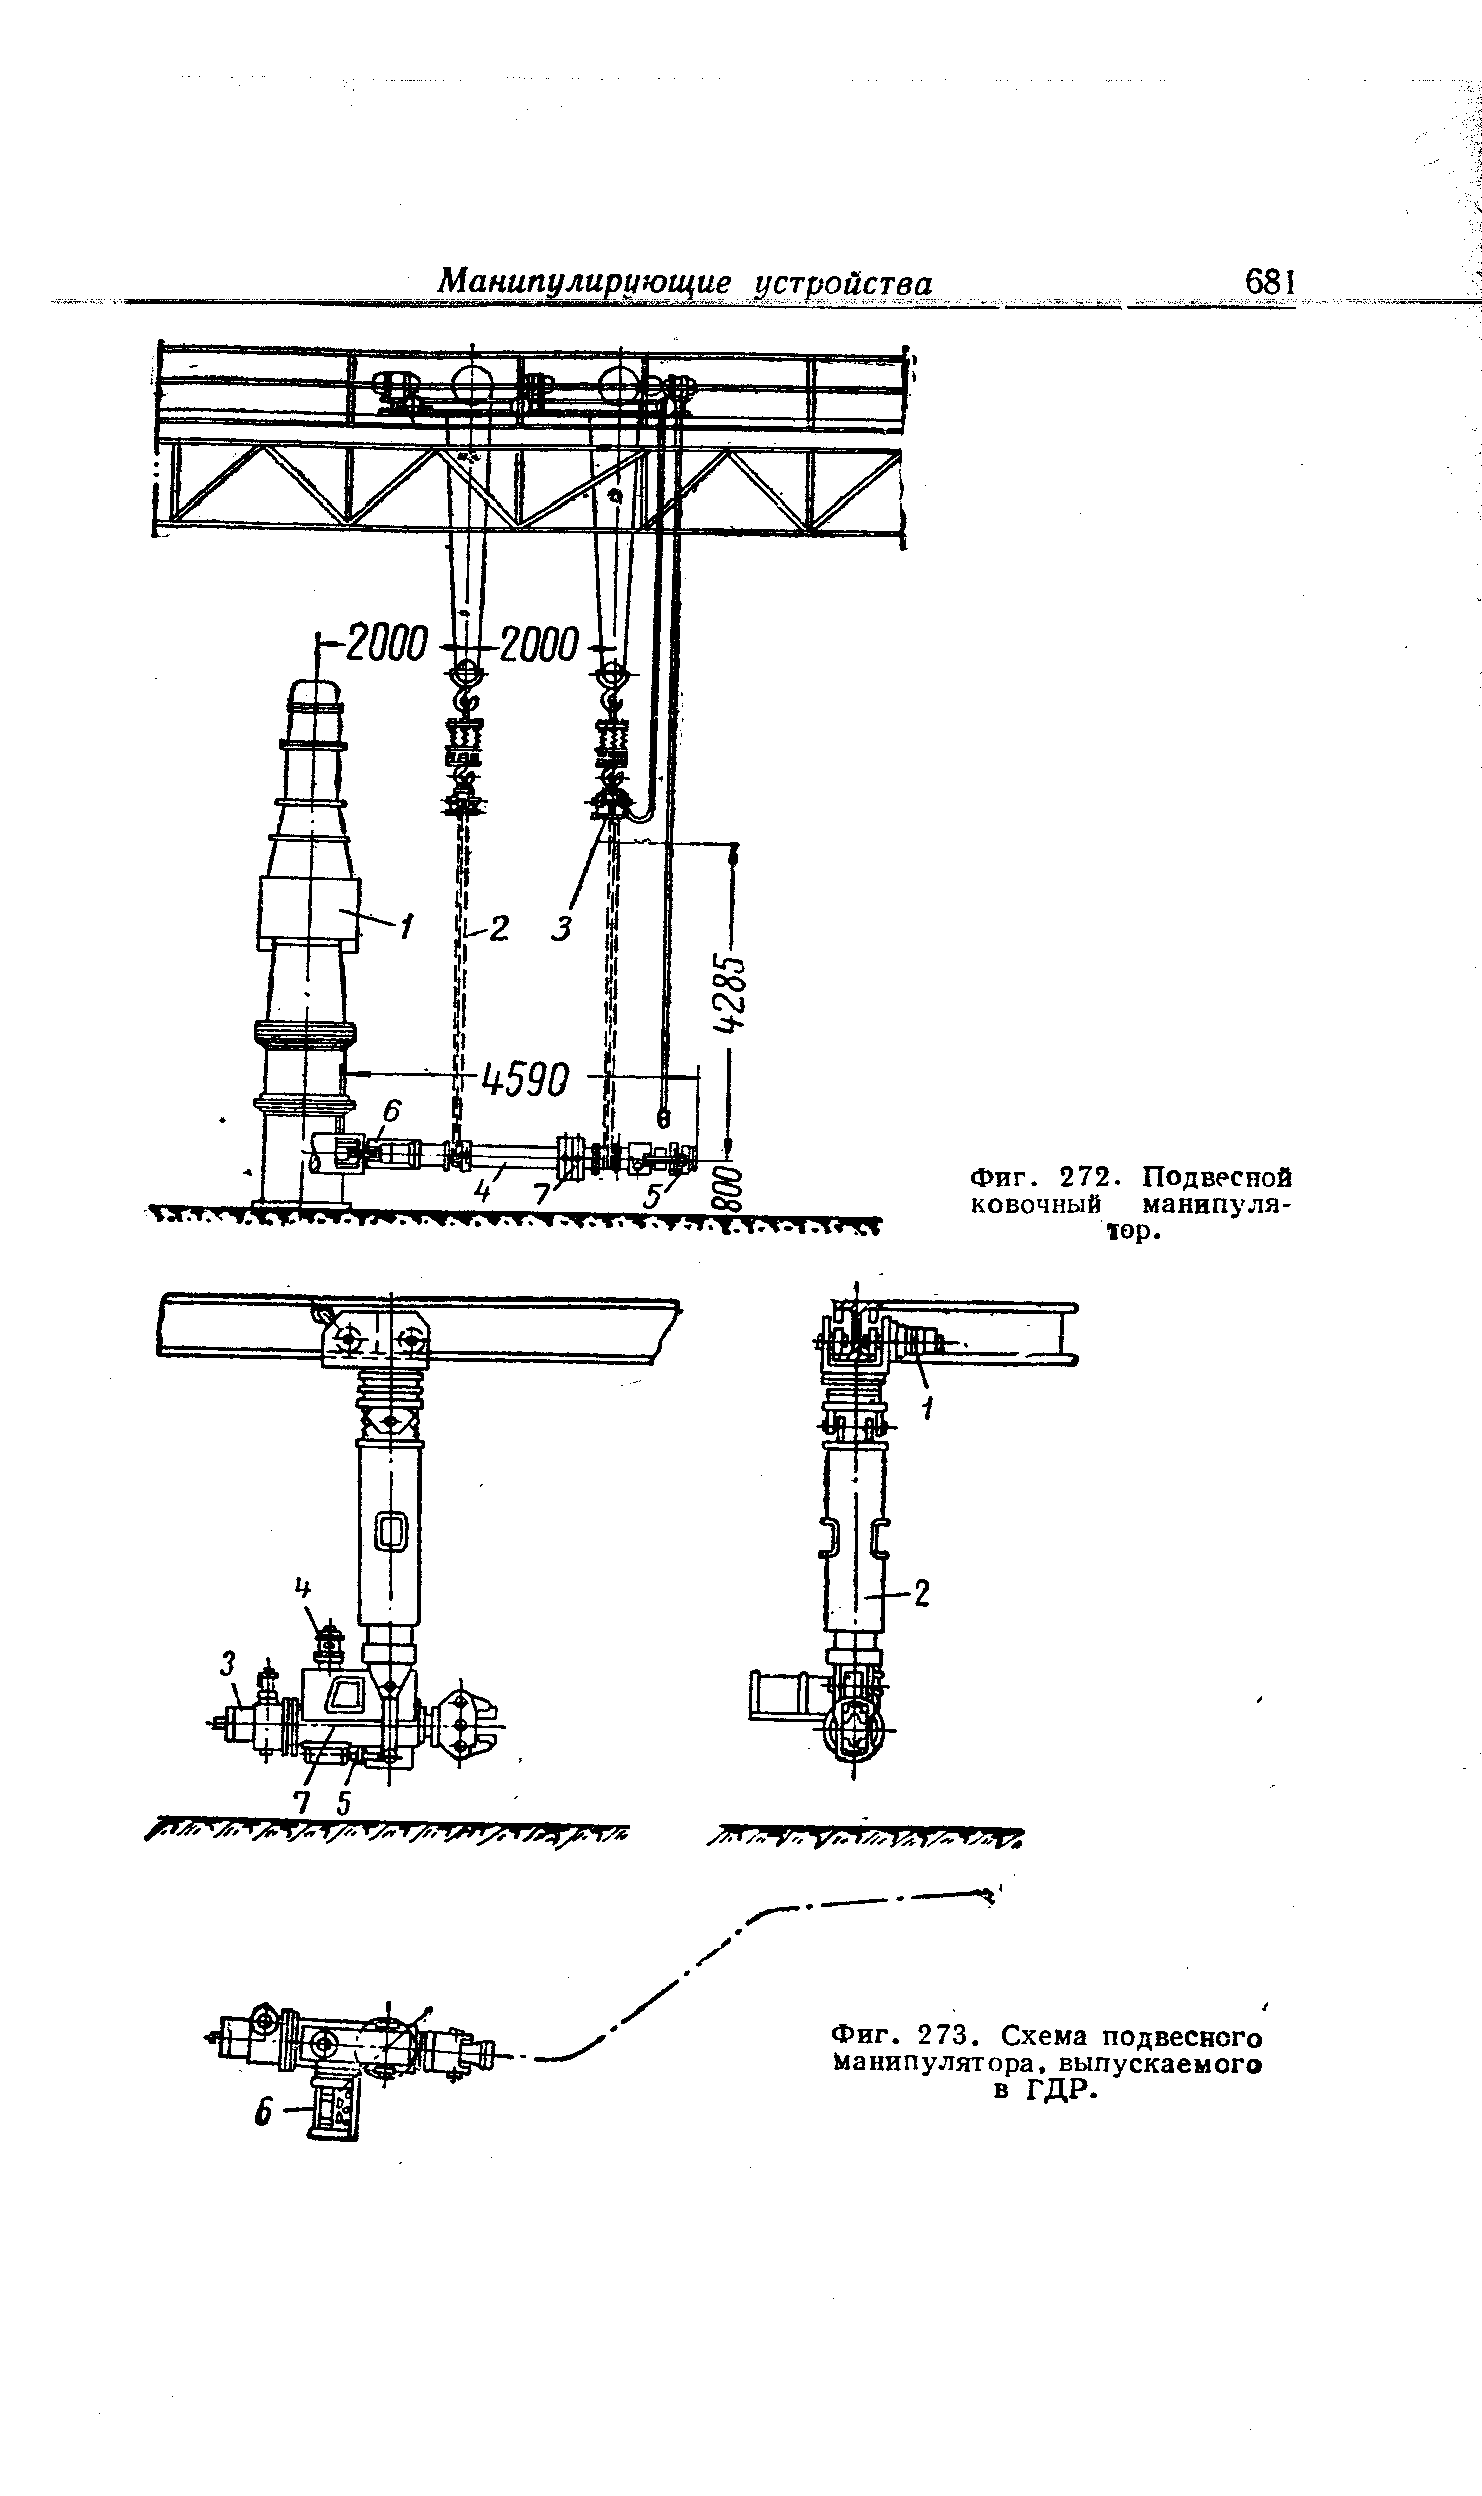 Фиг. 273. Схема подвесного Манипулятора, выпускаемого в ГДР.
